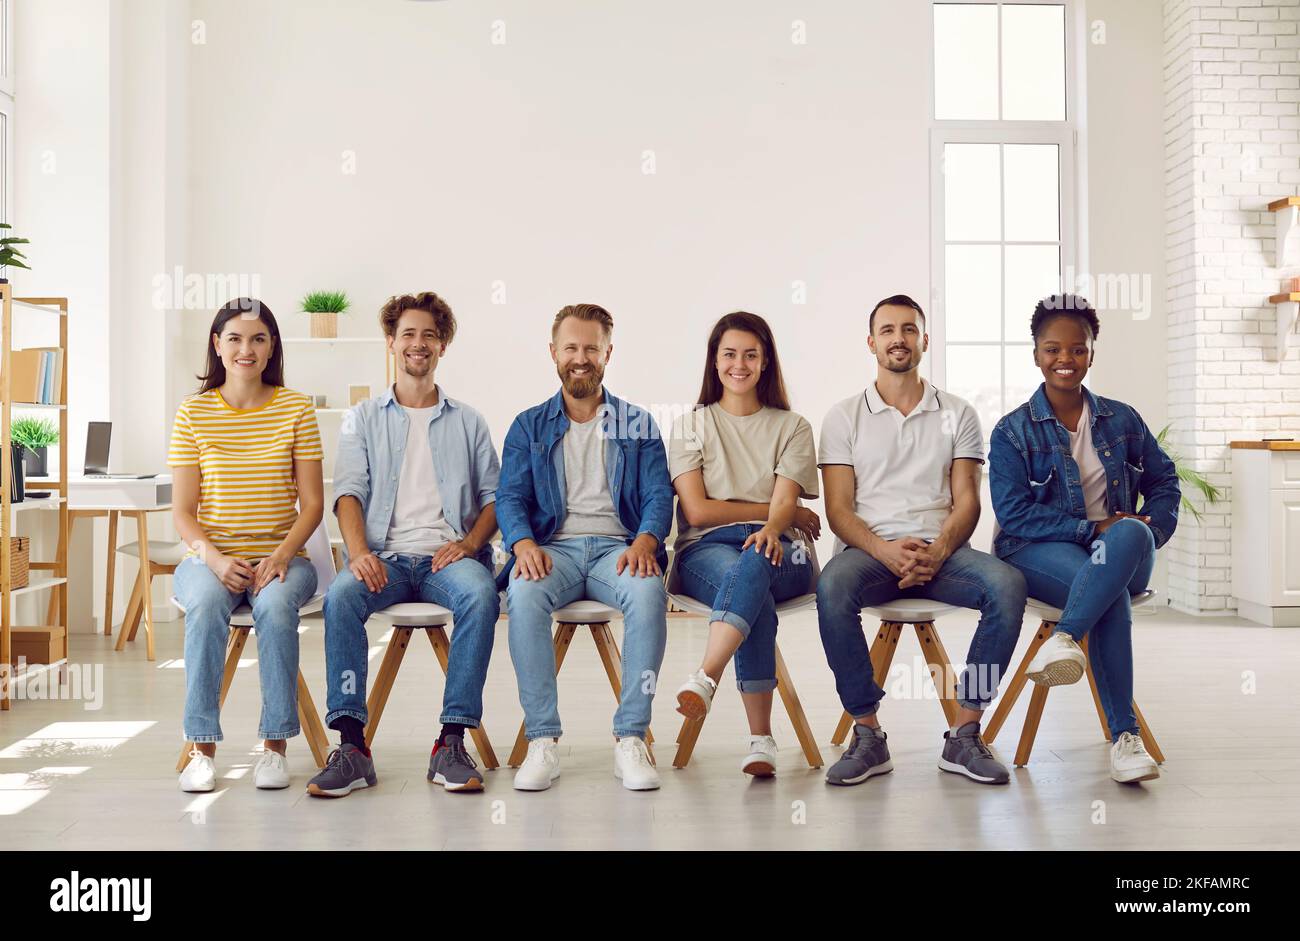 Porträt lächelnder, multirassischer junger Menschen in legerer Kleidung, die in Reihe auf Stühlen sitzen. Stockfoto